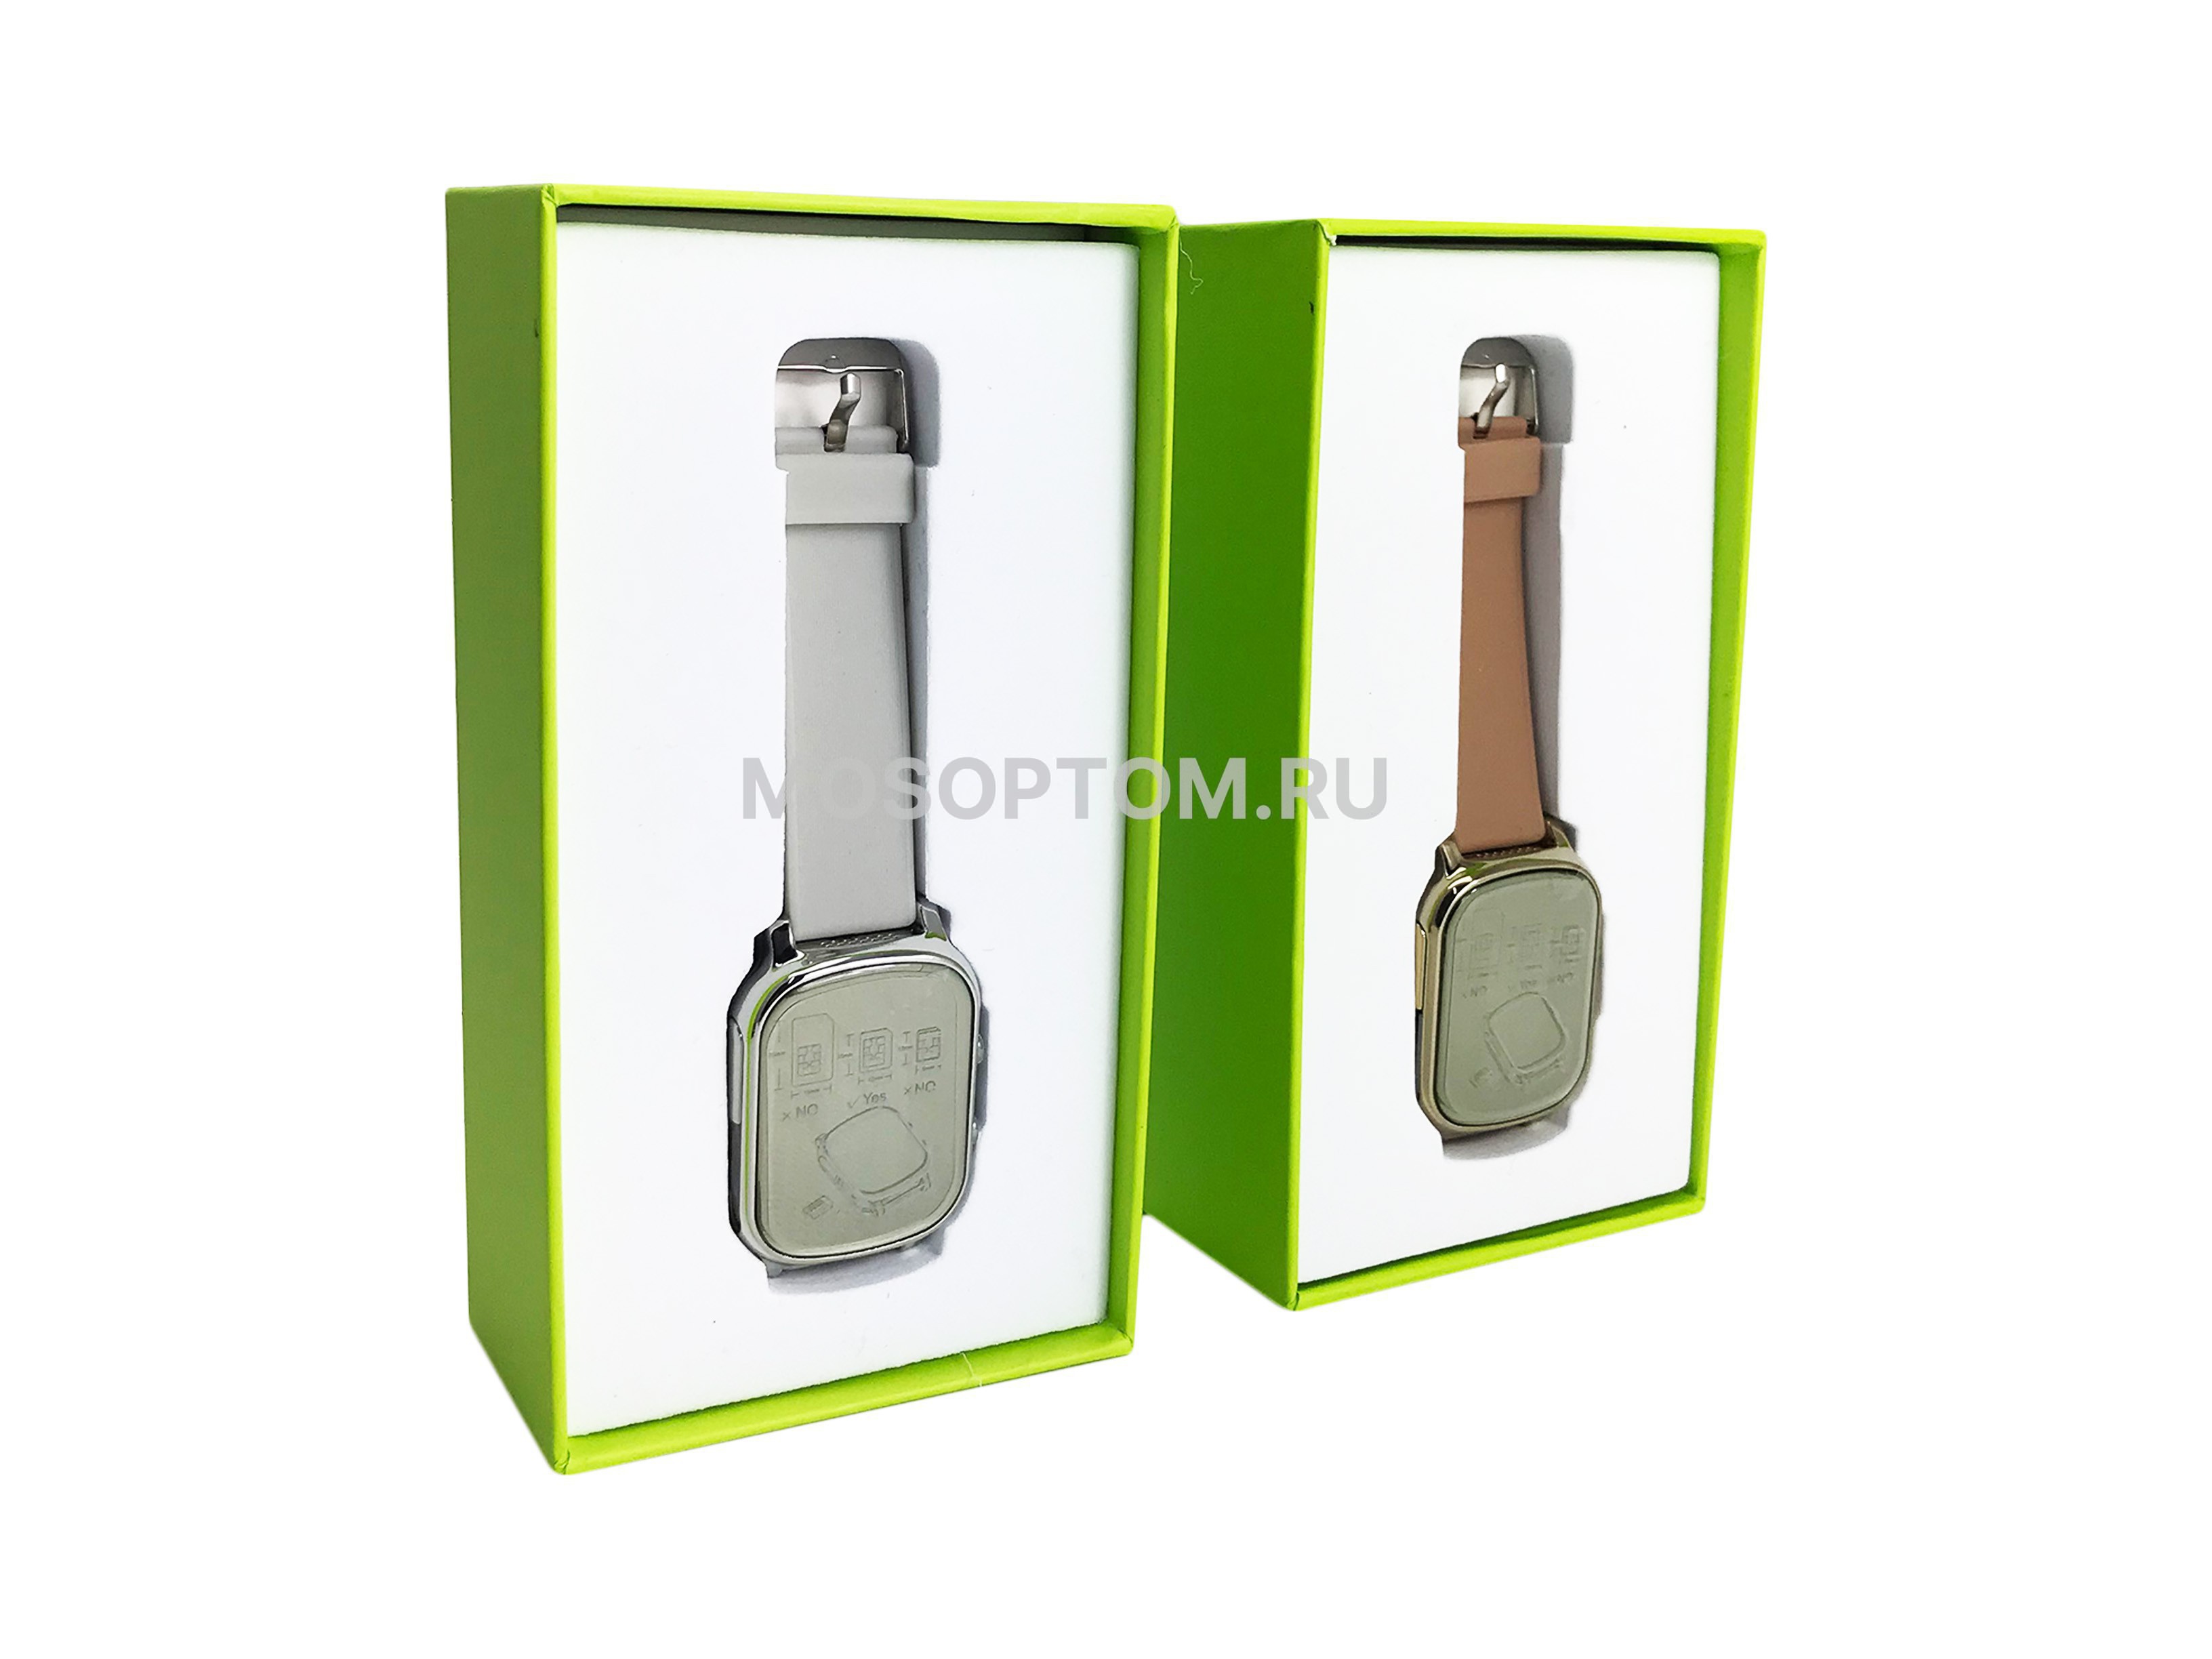 Часы с трекером Smart GPS Watch T58 оптом